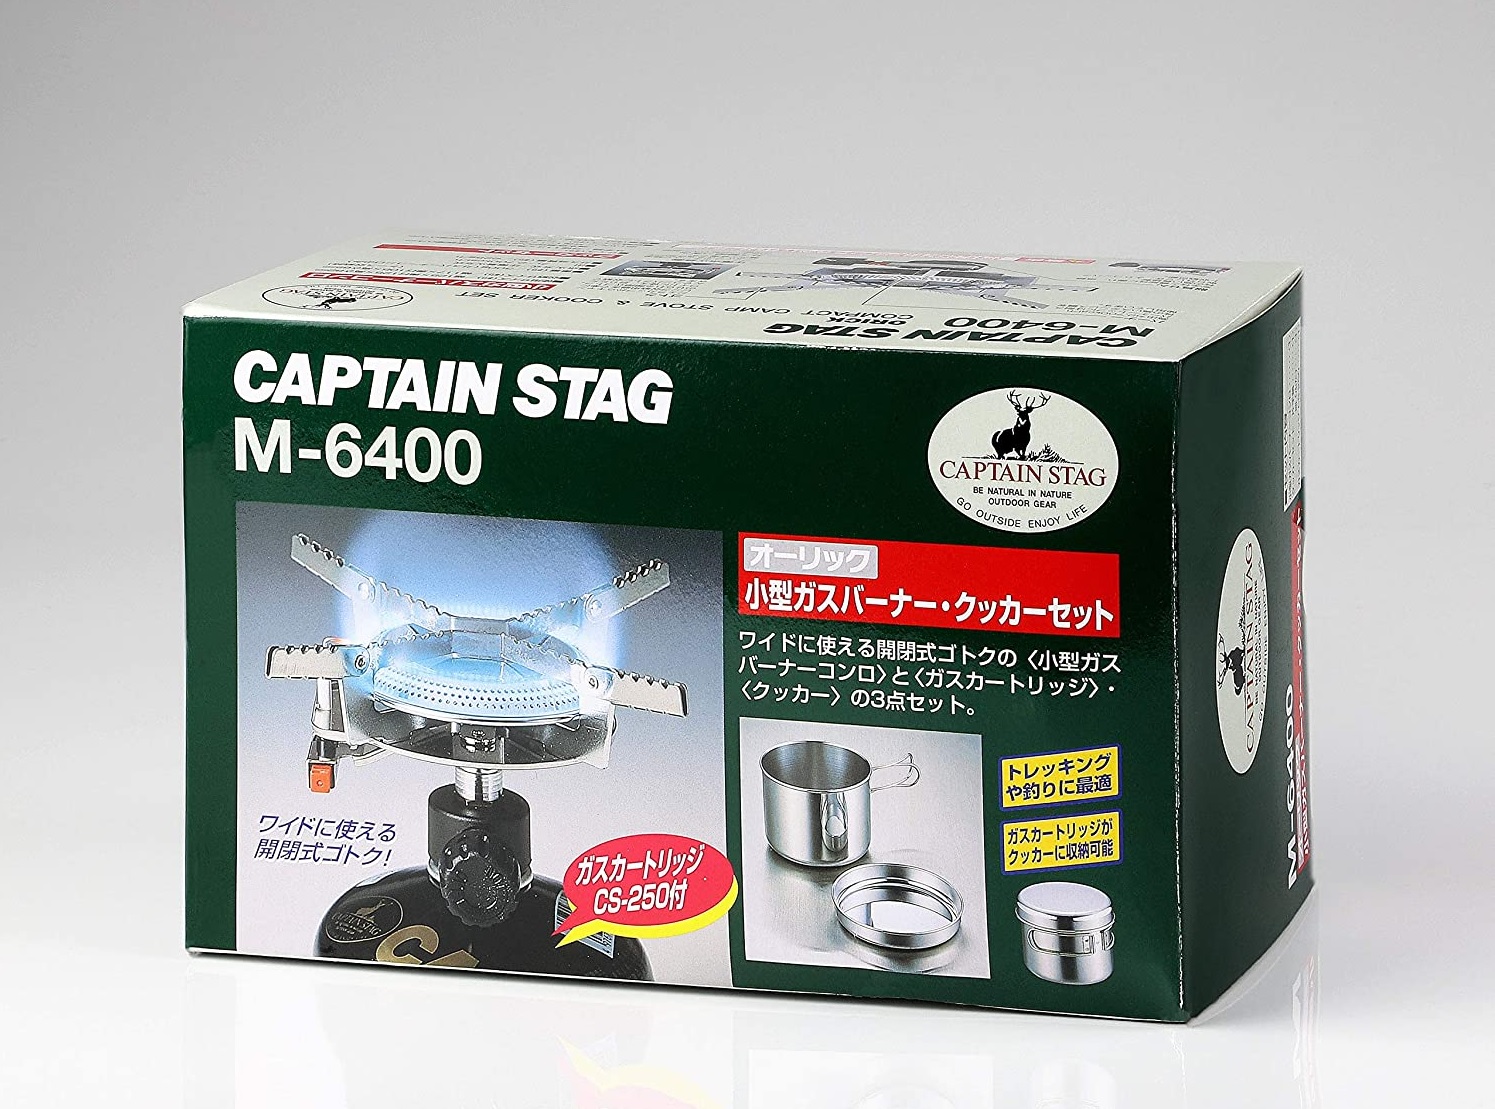 キャプテンスタッグ(CAPTAIN STAG) 一人用鍋セット オーリック 小型 ガスバーナーコンロ・クッカーセットM-6400